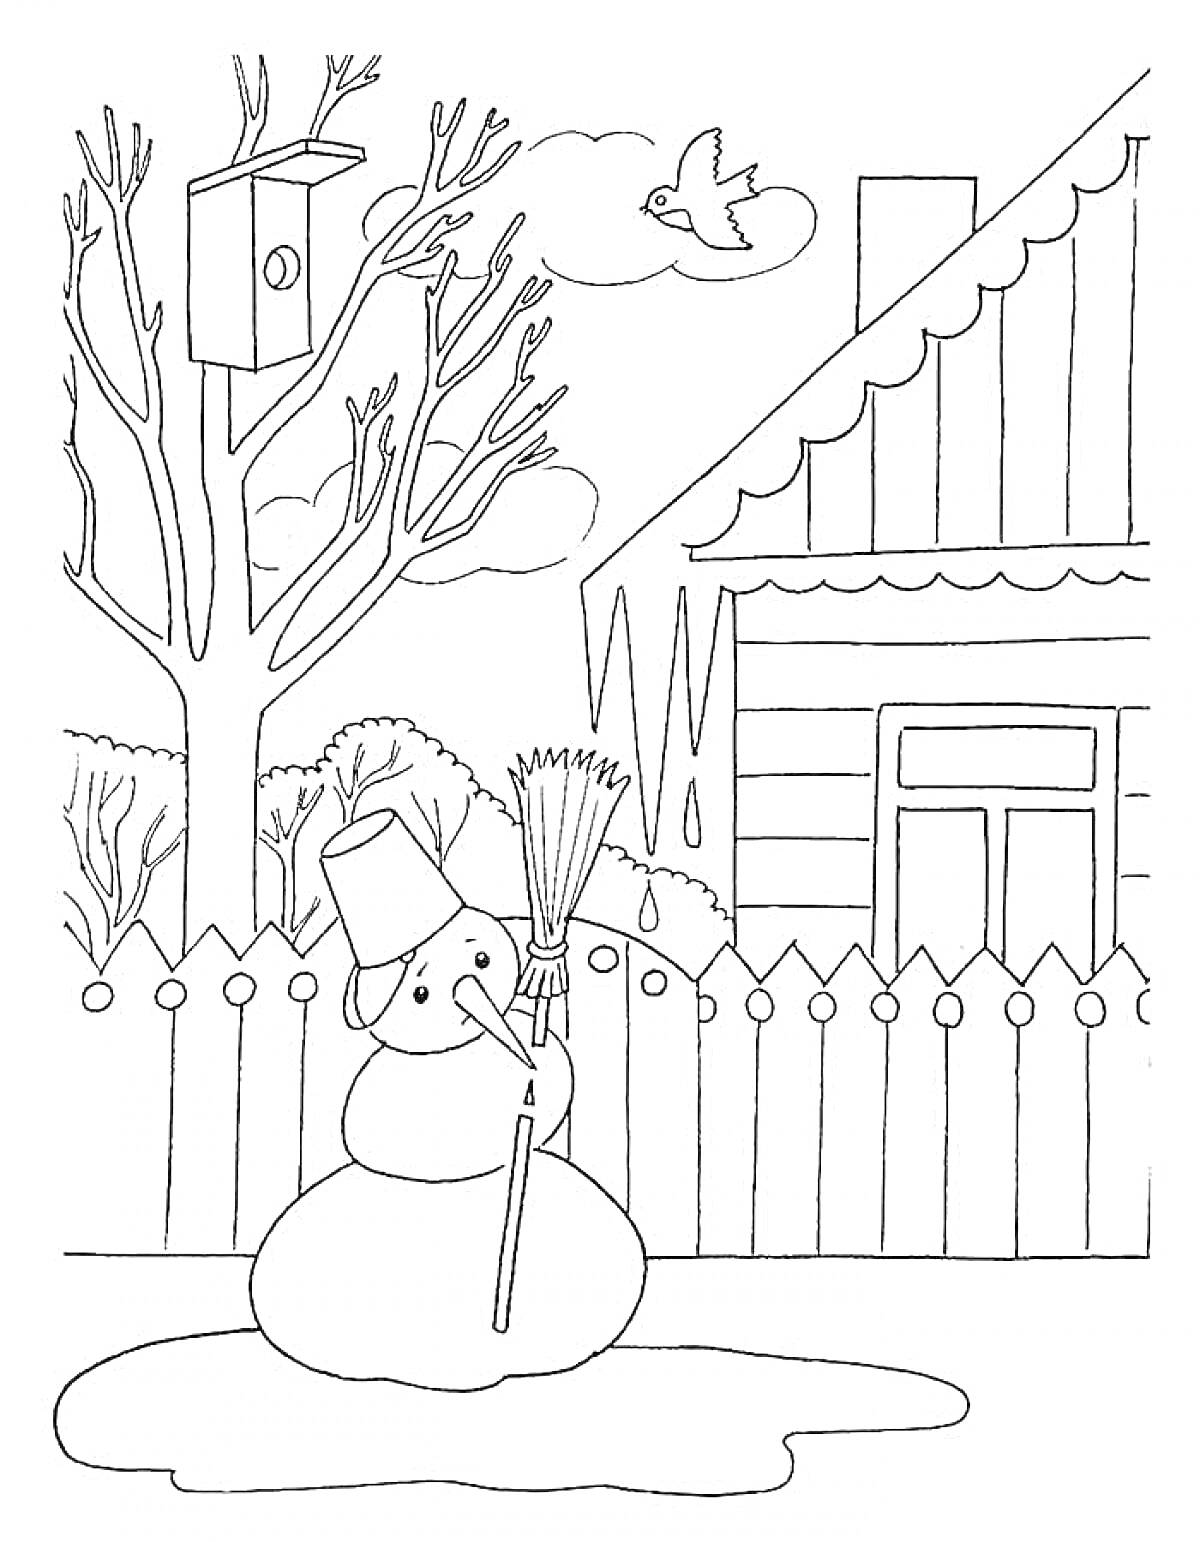 Раскраска Снеговик во дворе у дома с кормушкой для птиц на дереве